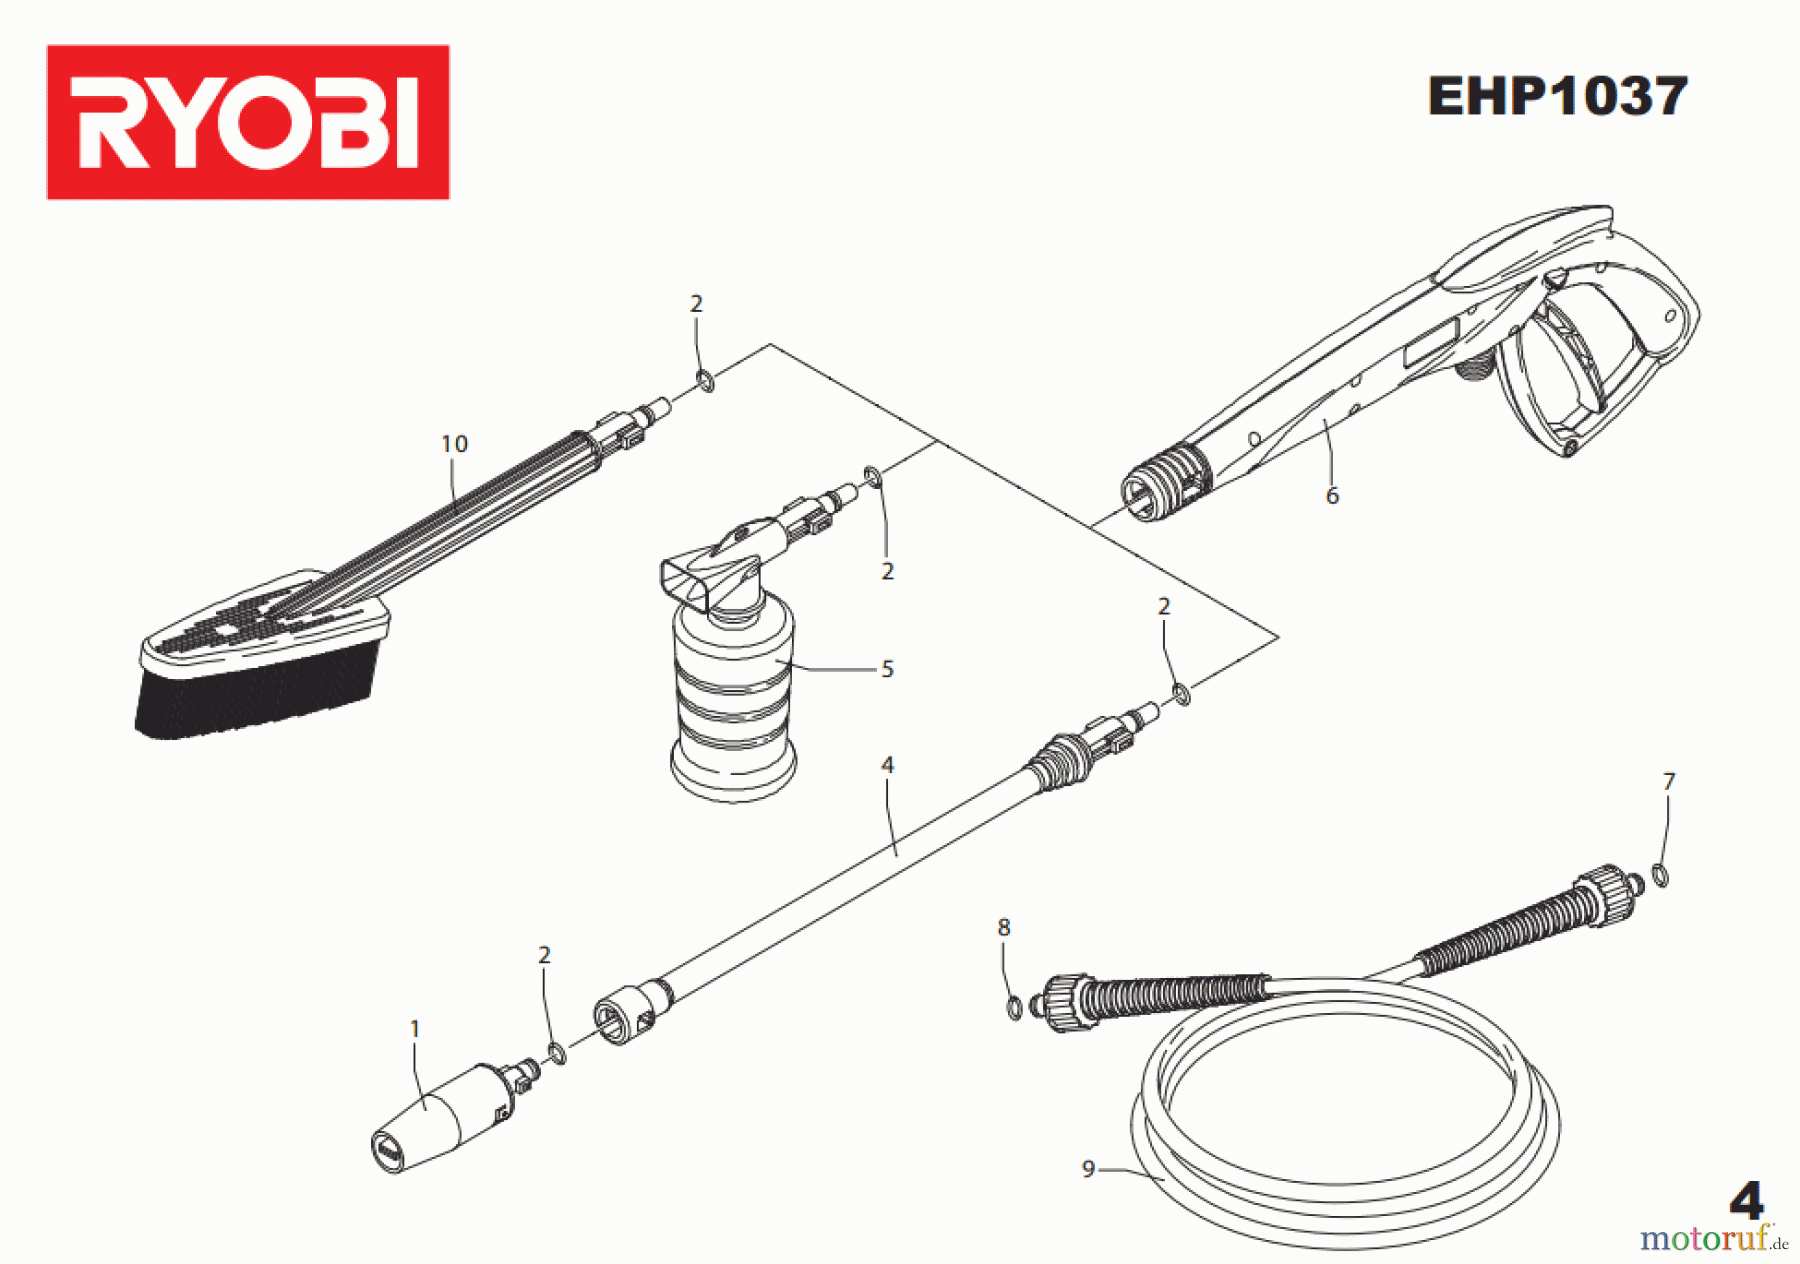  Ryobi Hochdruckreiniger EHP1037 Seite 4